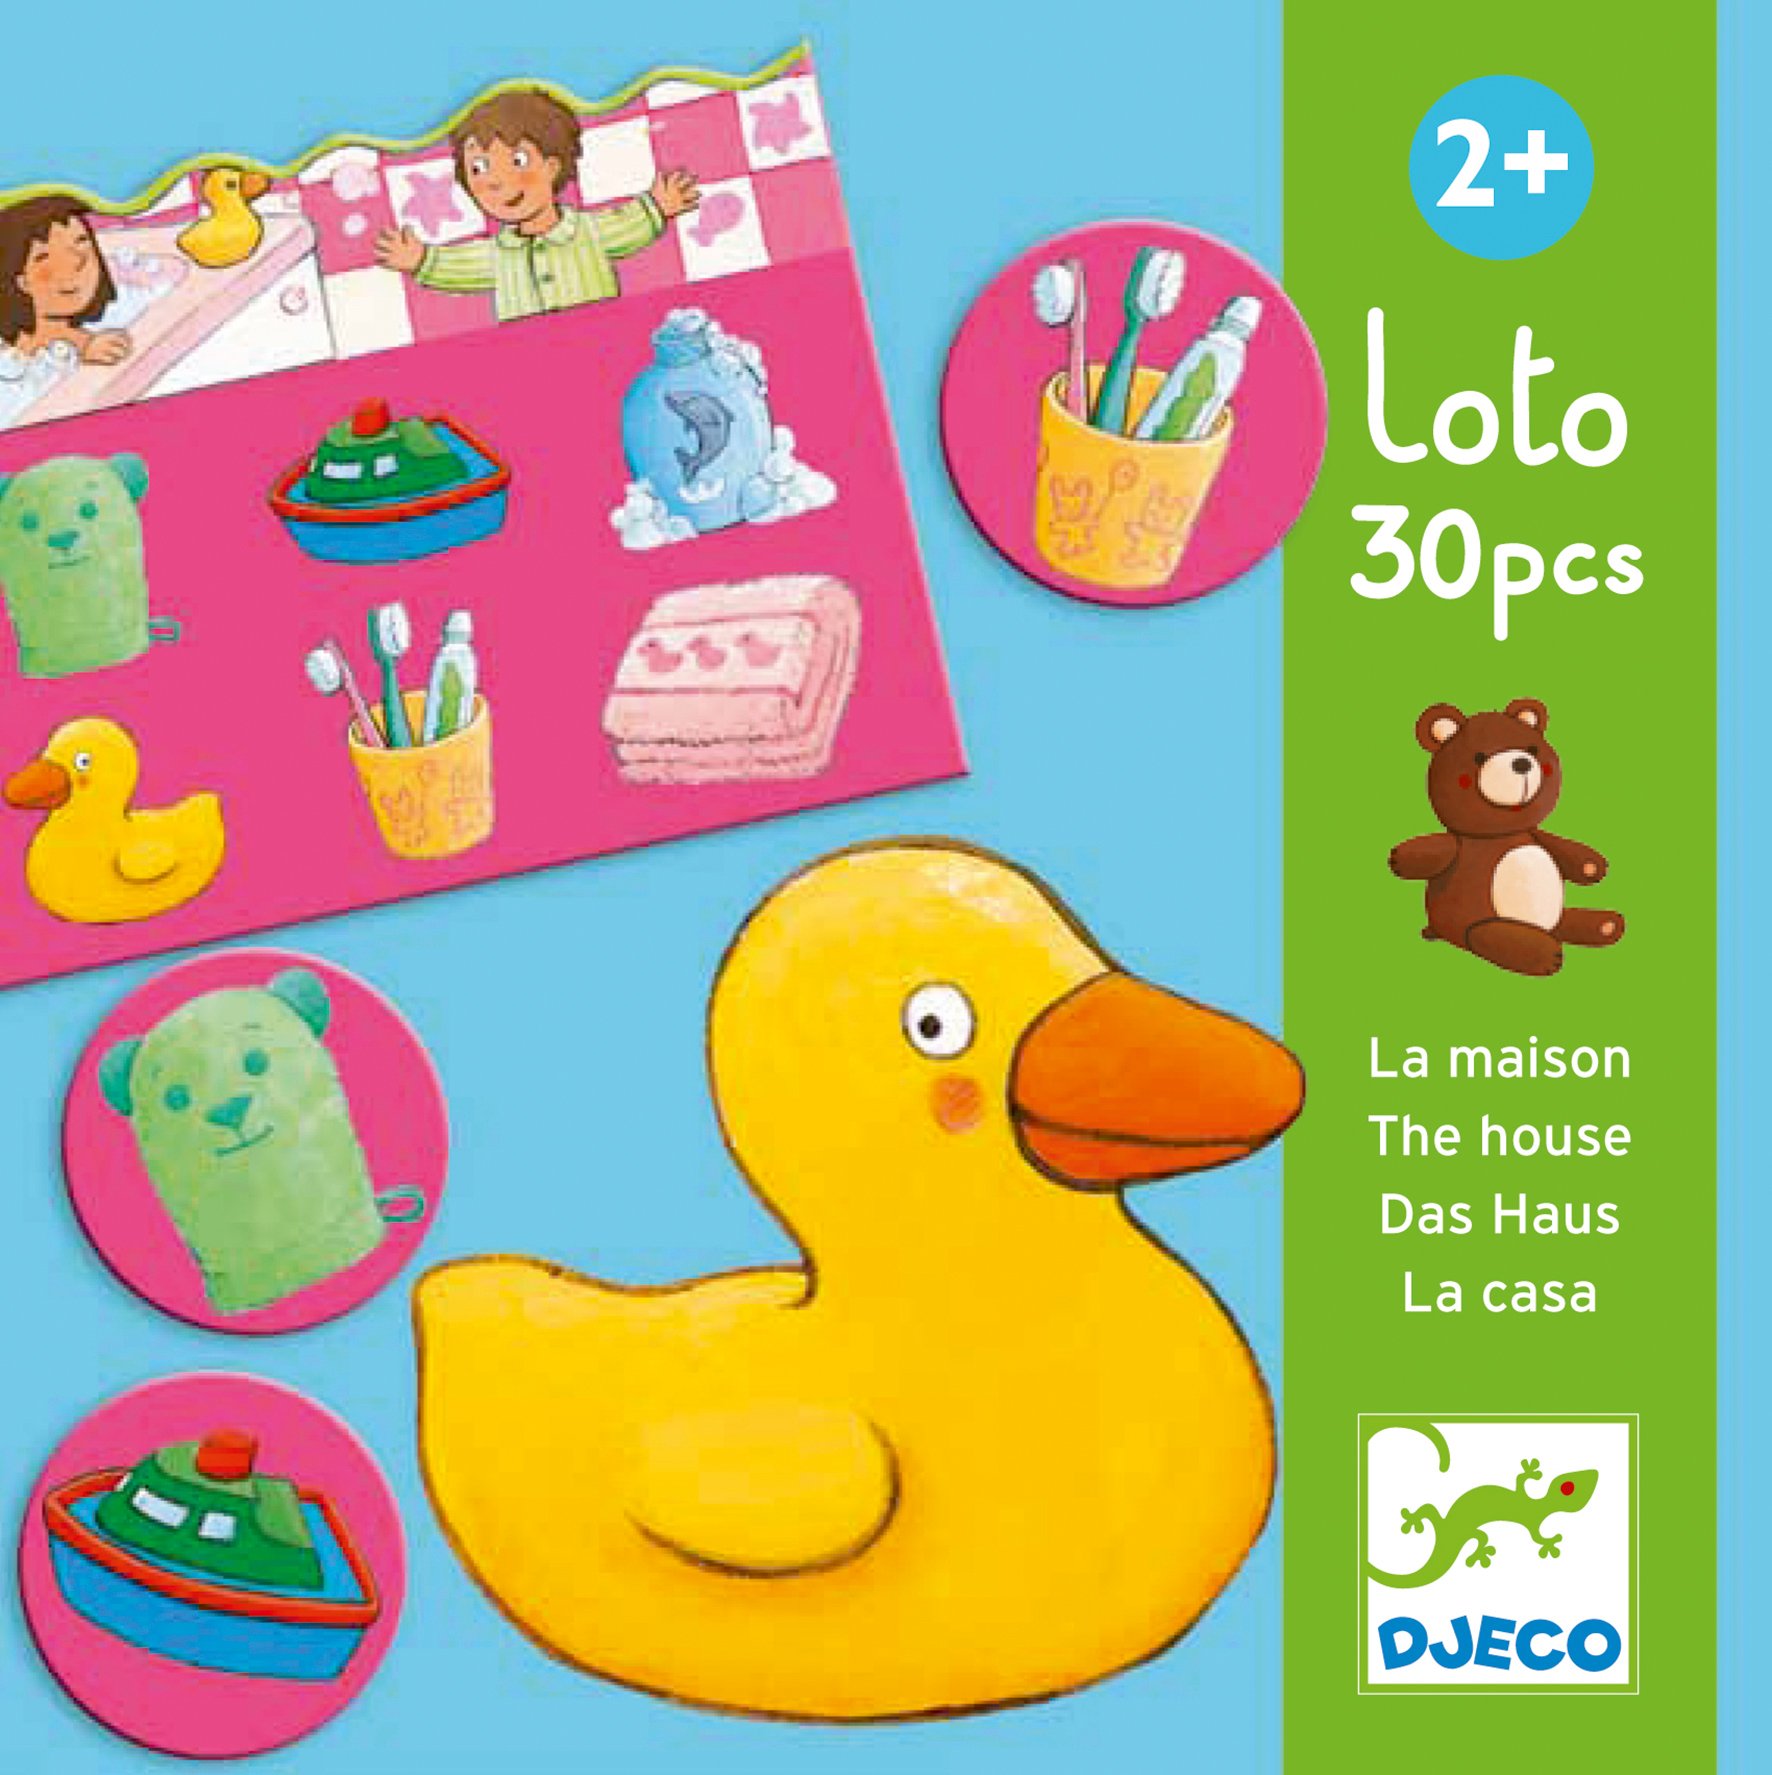 Acheter le jeu Loto dans la maison de Djeco - Jeu éducatif Tropfastoche.com